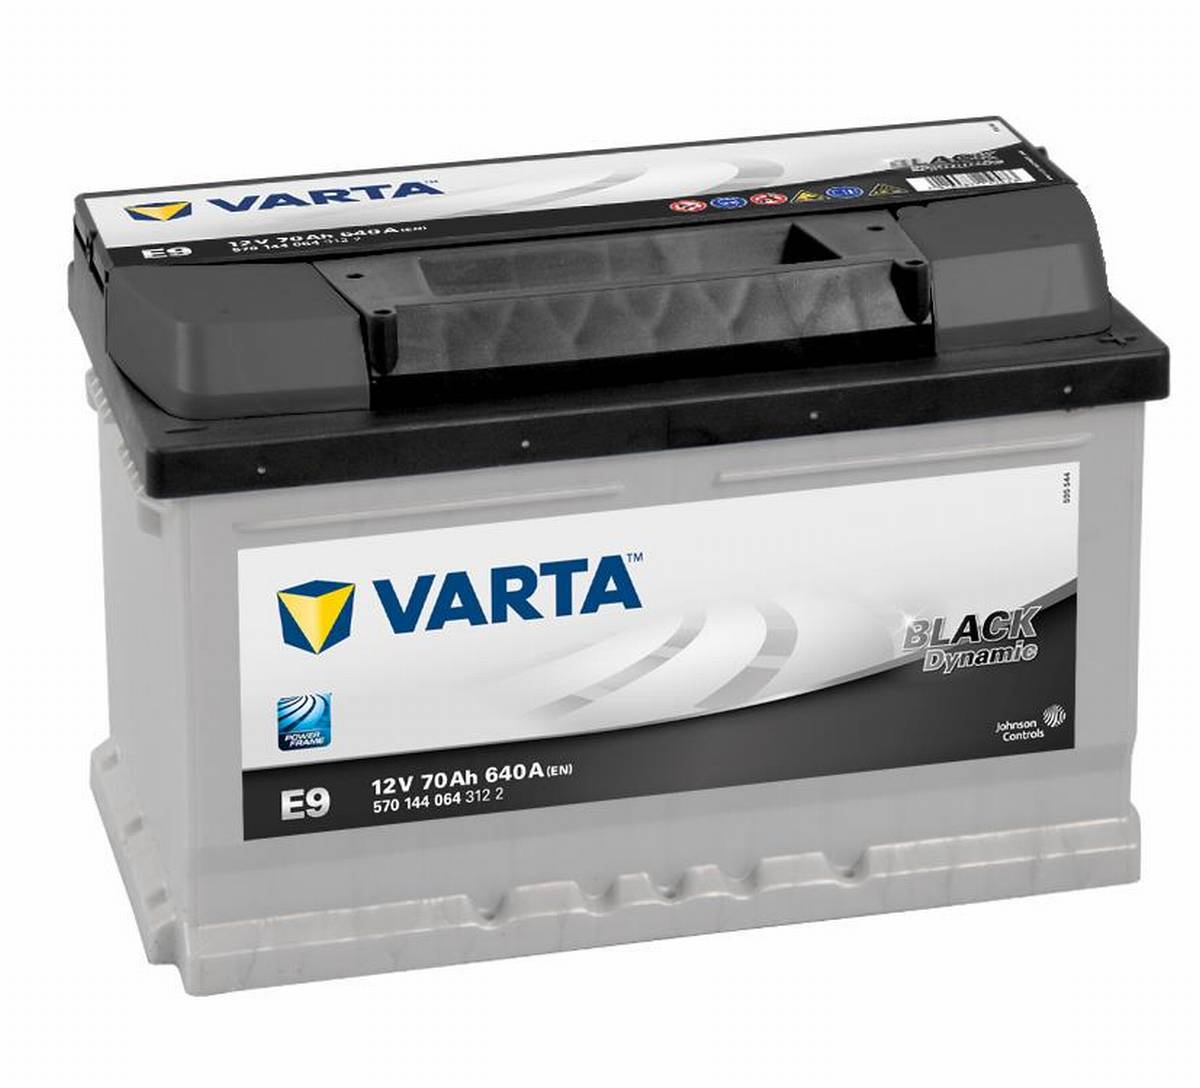 Varta BLACK Dynamic E9 Autobatterie 570 144 064 3122, 12V, 70Ah 640A/EN :  : Auto & Motorrad